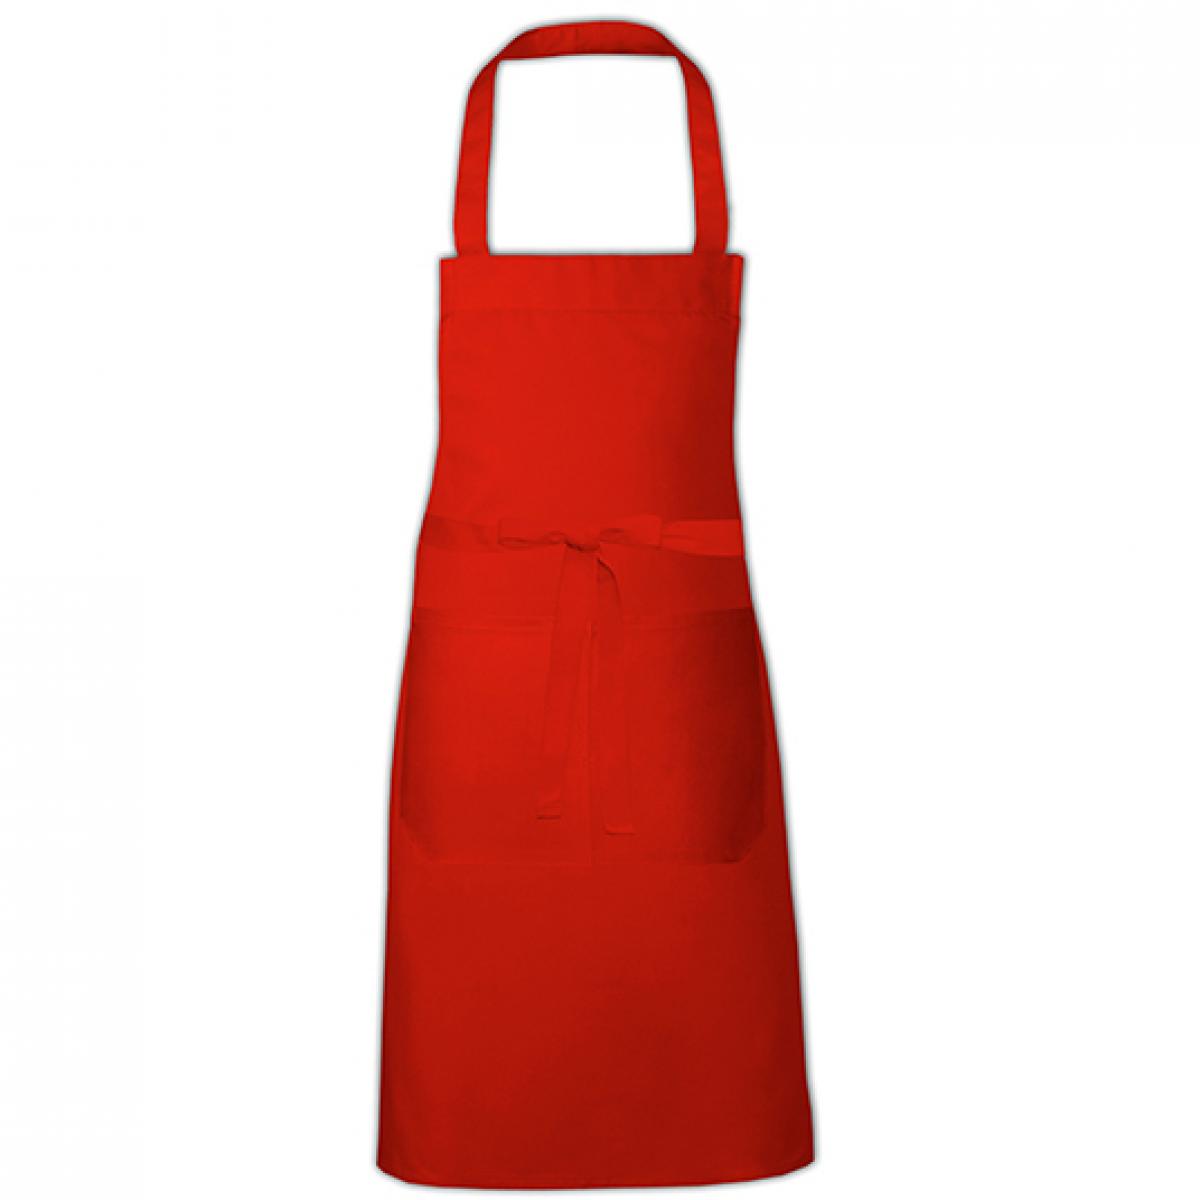 Hersteller: Link Kitchen Wear Herstellernummer: HSC8070 Artikelbezeichnung: Cotton Hobby Apron - Kochschürze Farbe: Red (ca. Pantone 200)